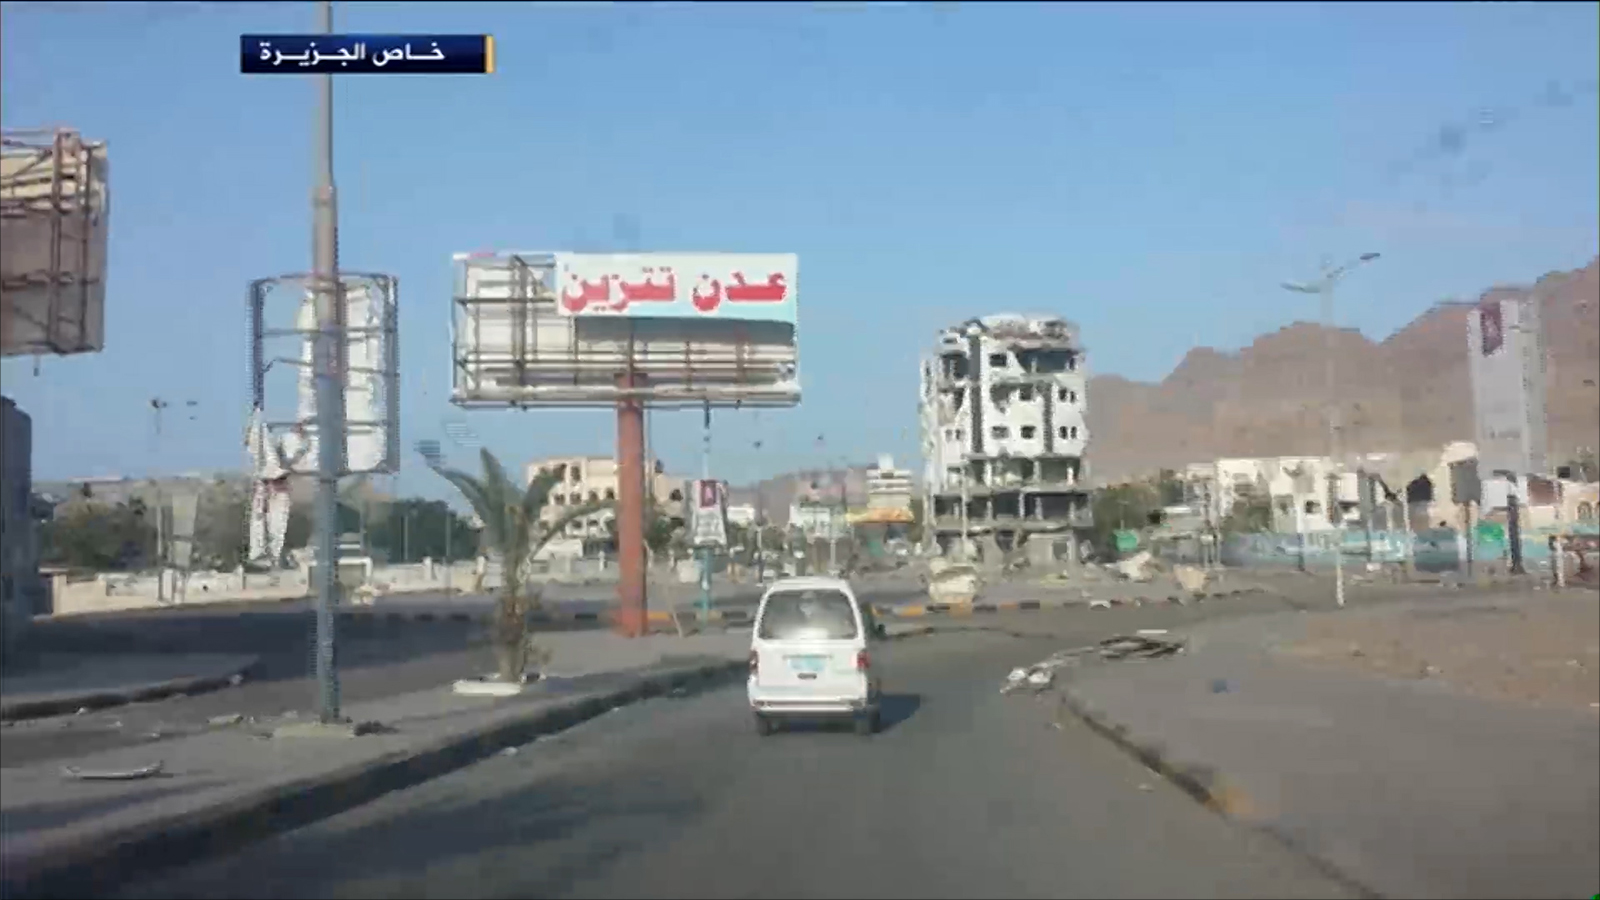 السلطات في عدن أعلنت عودة الأوضاع للاستقرار (الجزيرة)